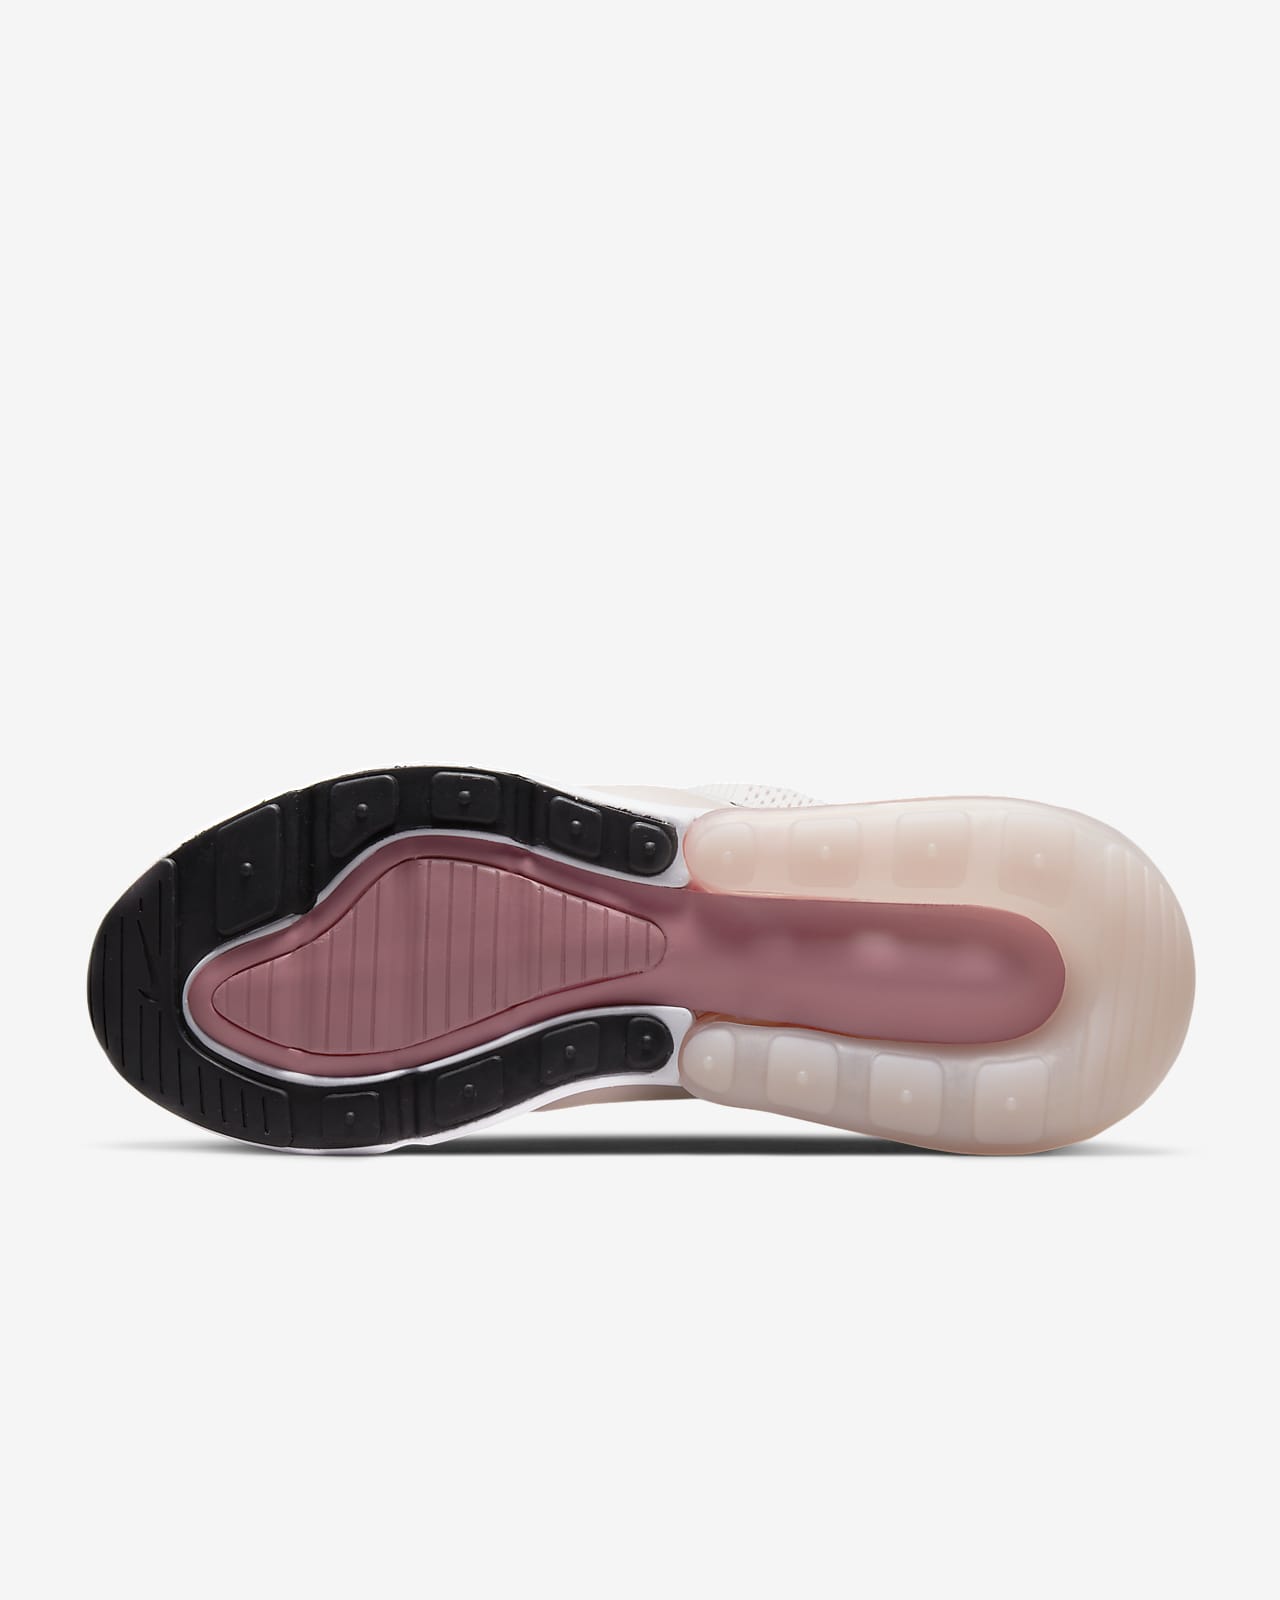 Nike - W Air MAX 270 - AH6789006 - El Color: Negros - Talla: 26 cm :  : Ropa, Zapatos y Accesorios